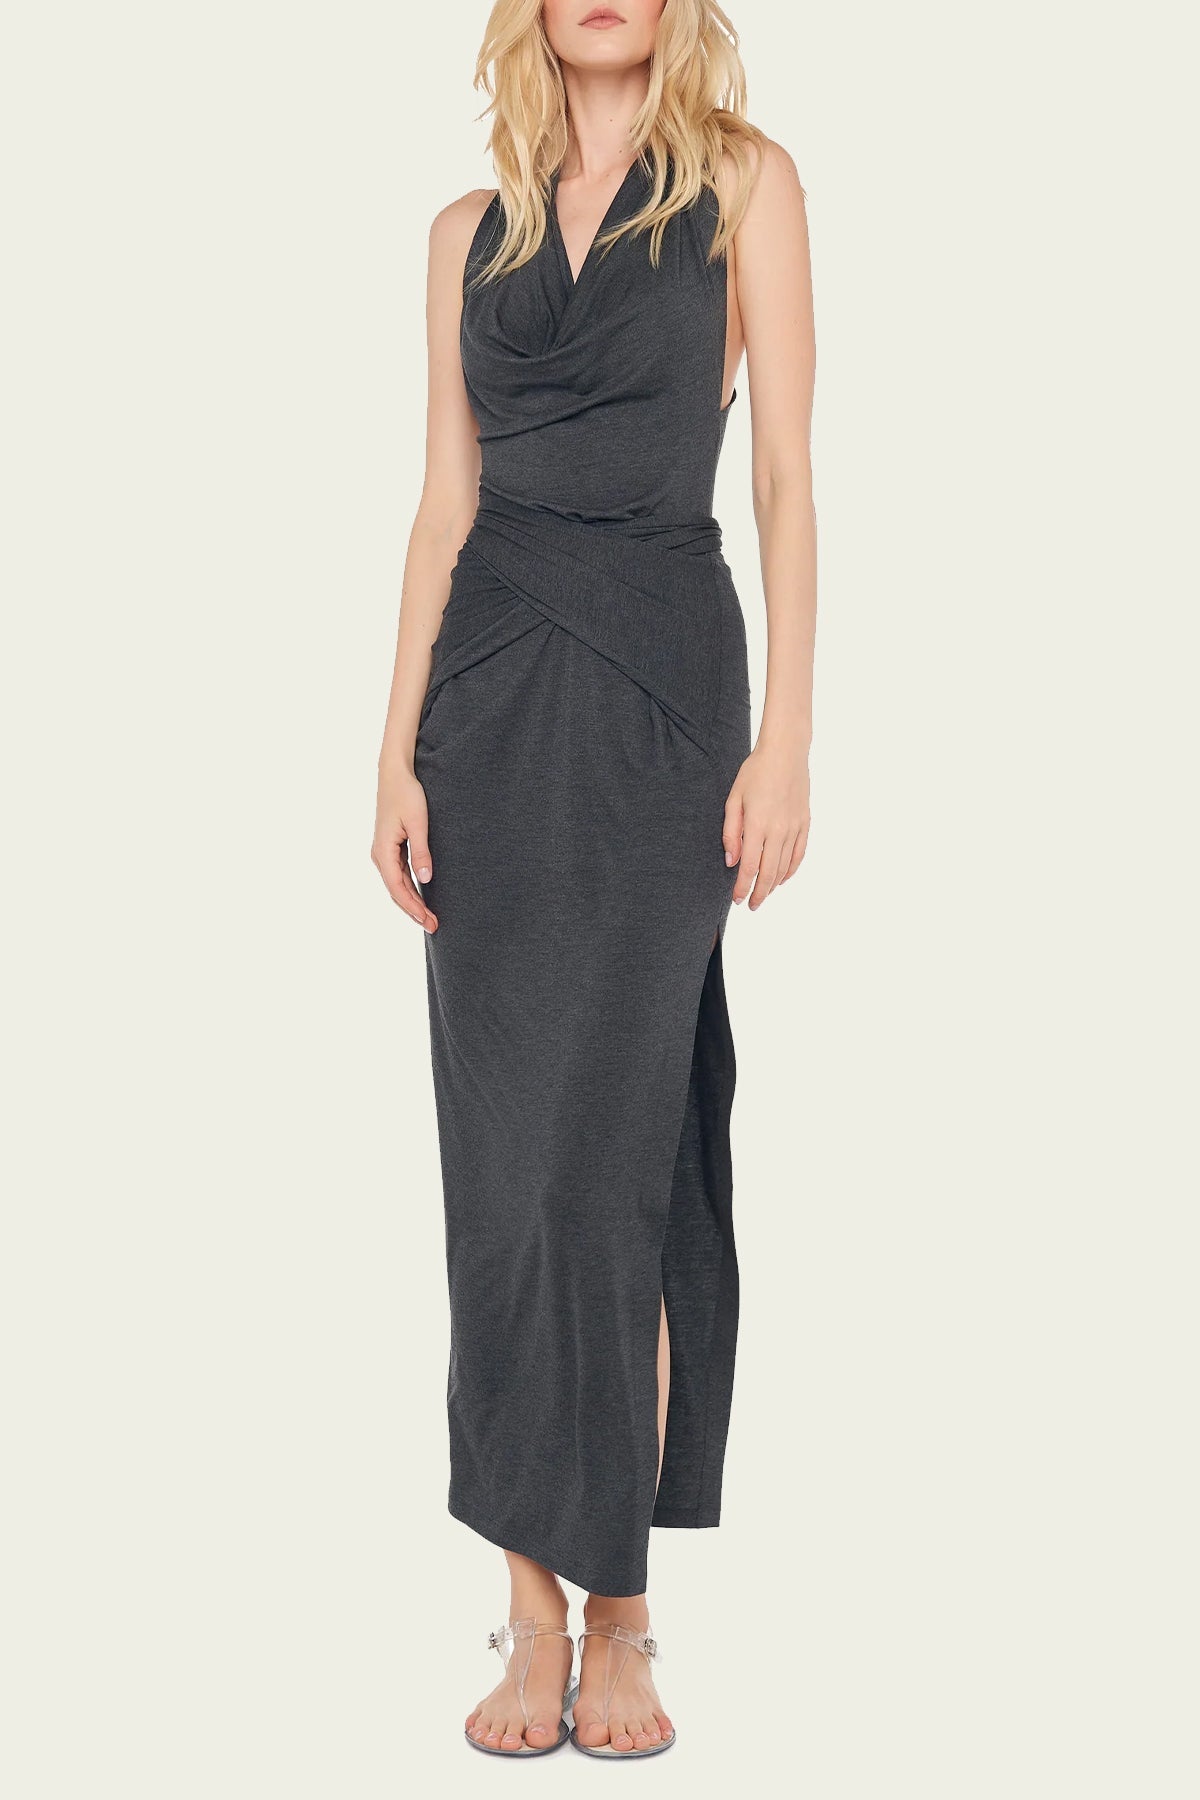 Neeta Tie Front Side Slit Gown in Dark Grey - shop-olivia.com